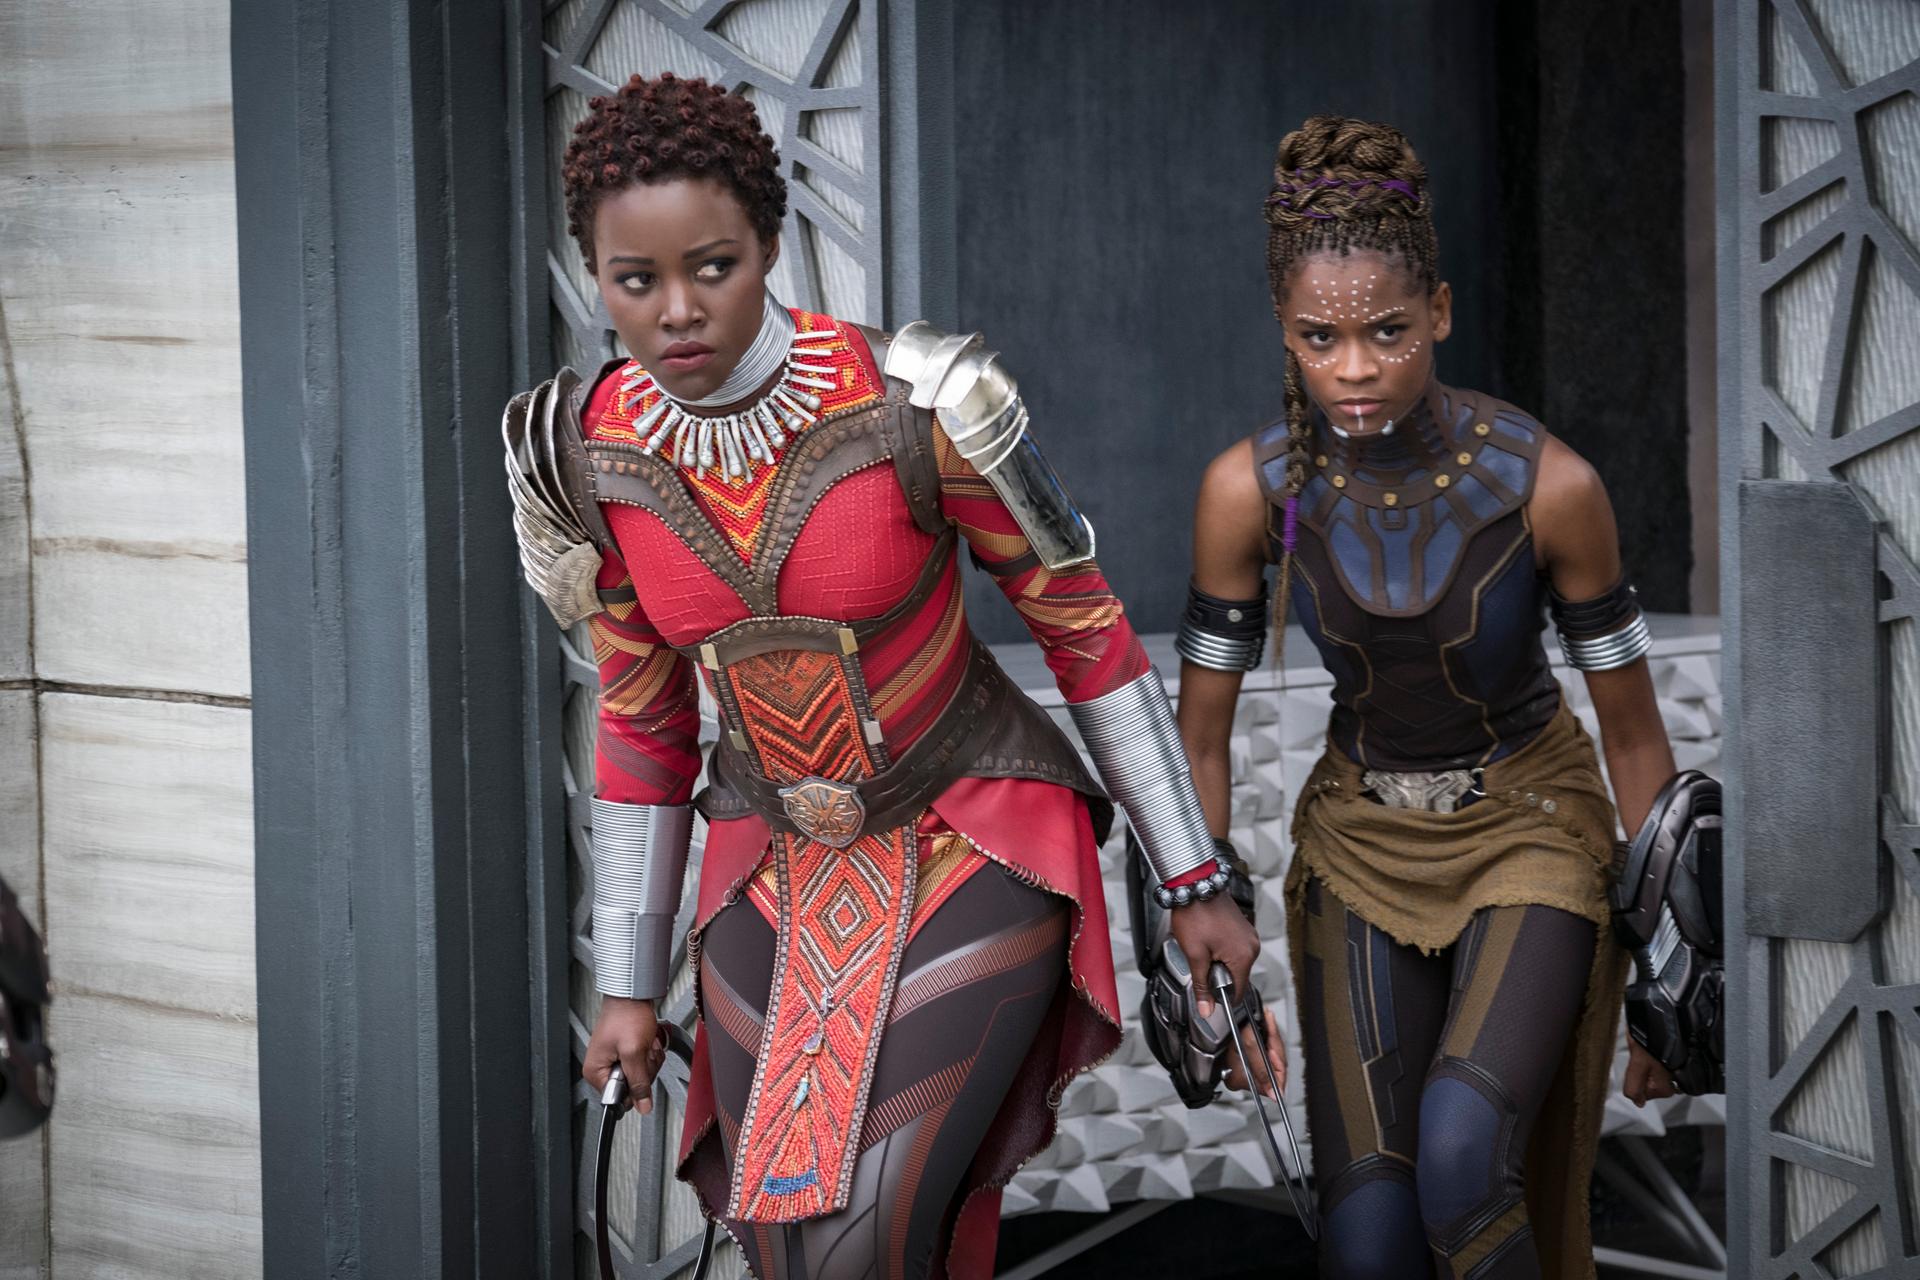 Marvel Studios' “Black Panther.” L to R: Nakia (Lupita Nyong'o) and Shuri (Letitia Wright).